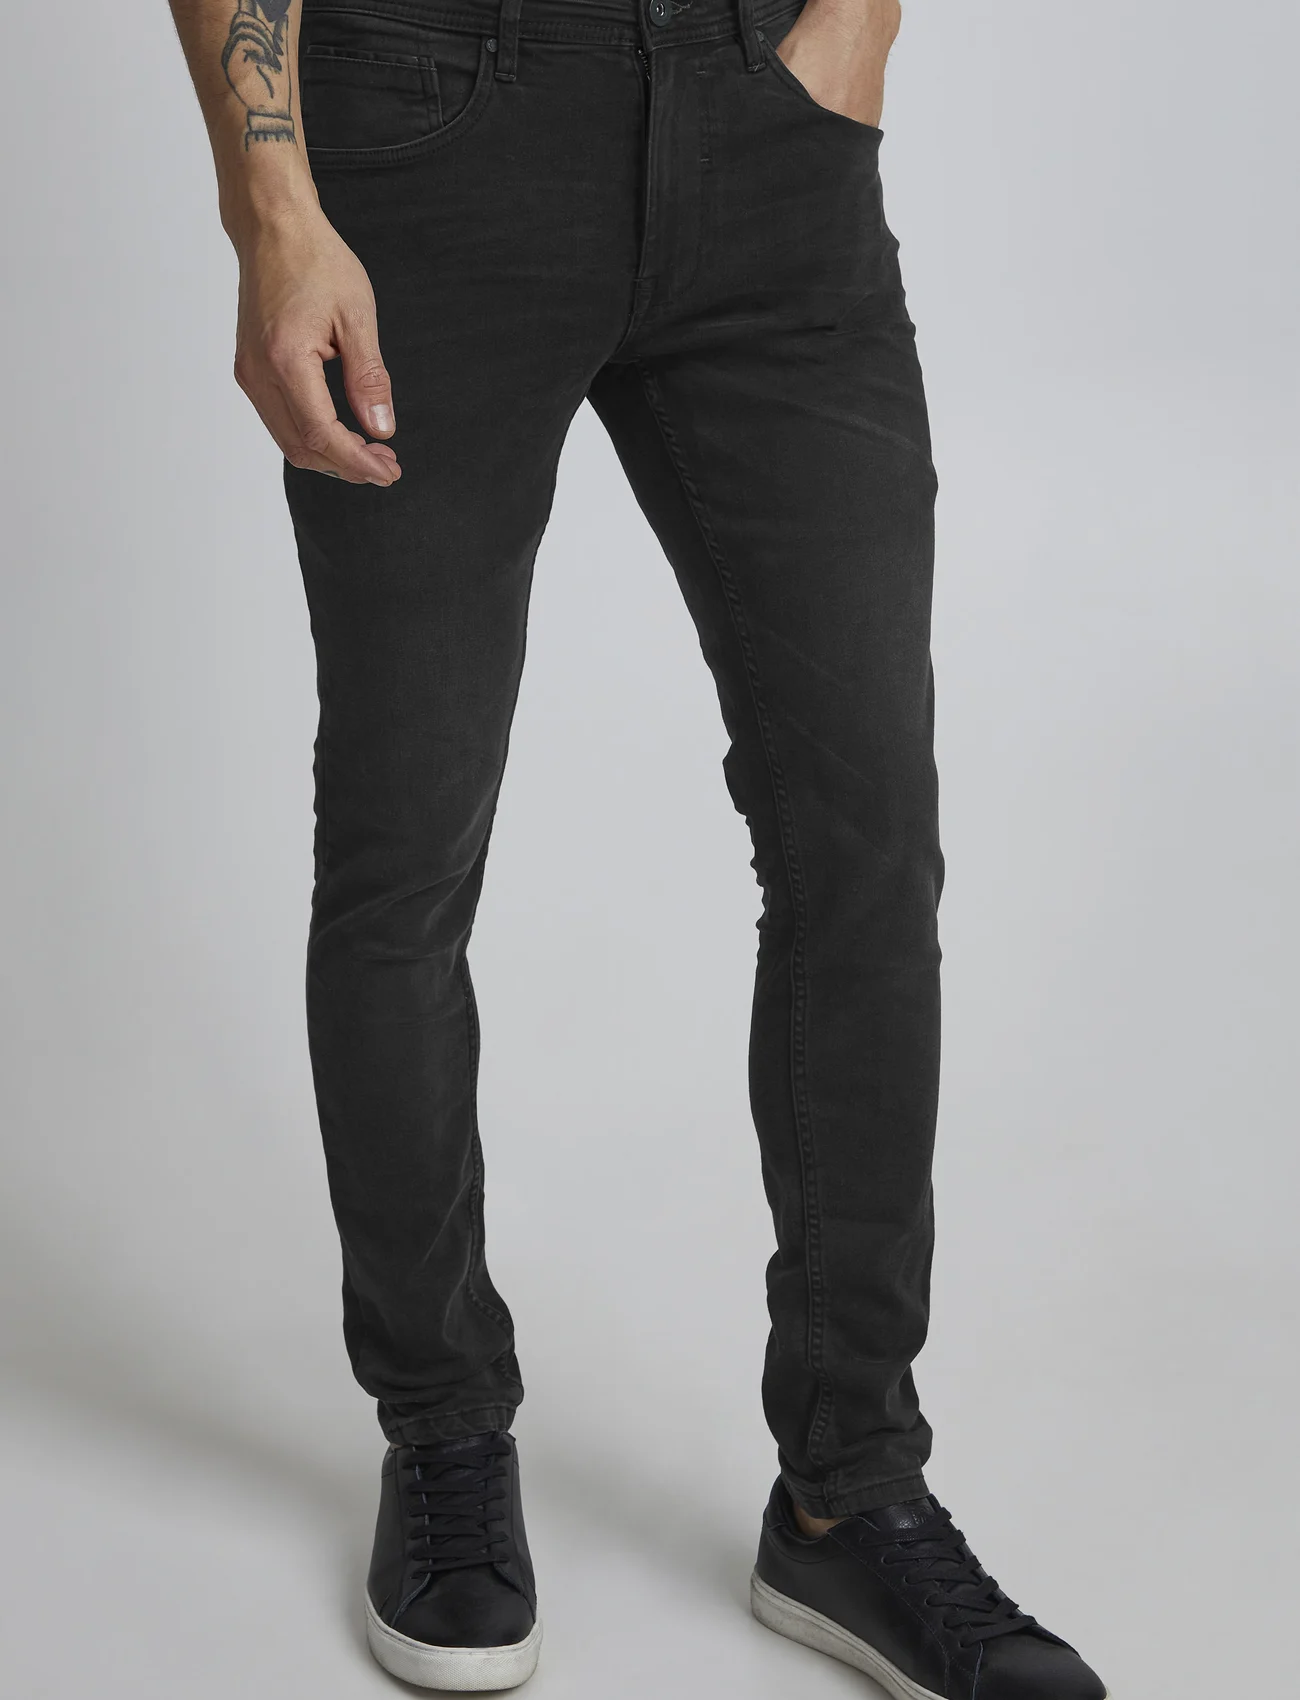 Blend - Jet fit - NOOS - slim jeans - denim black - 0